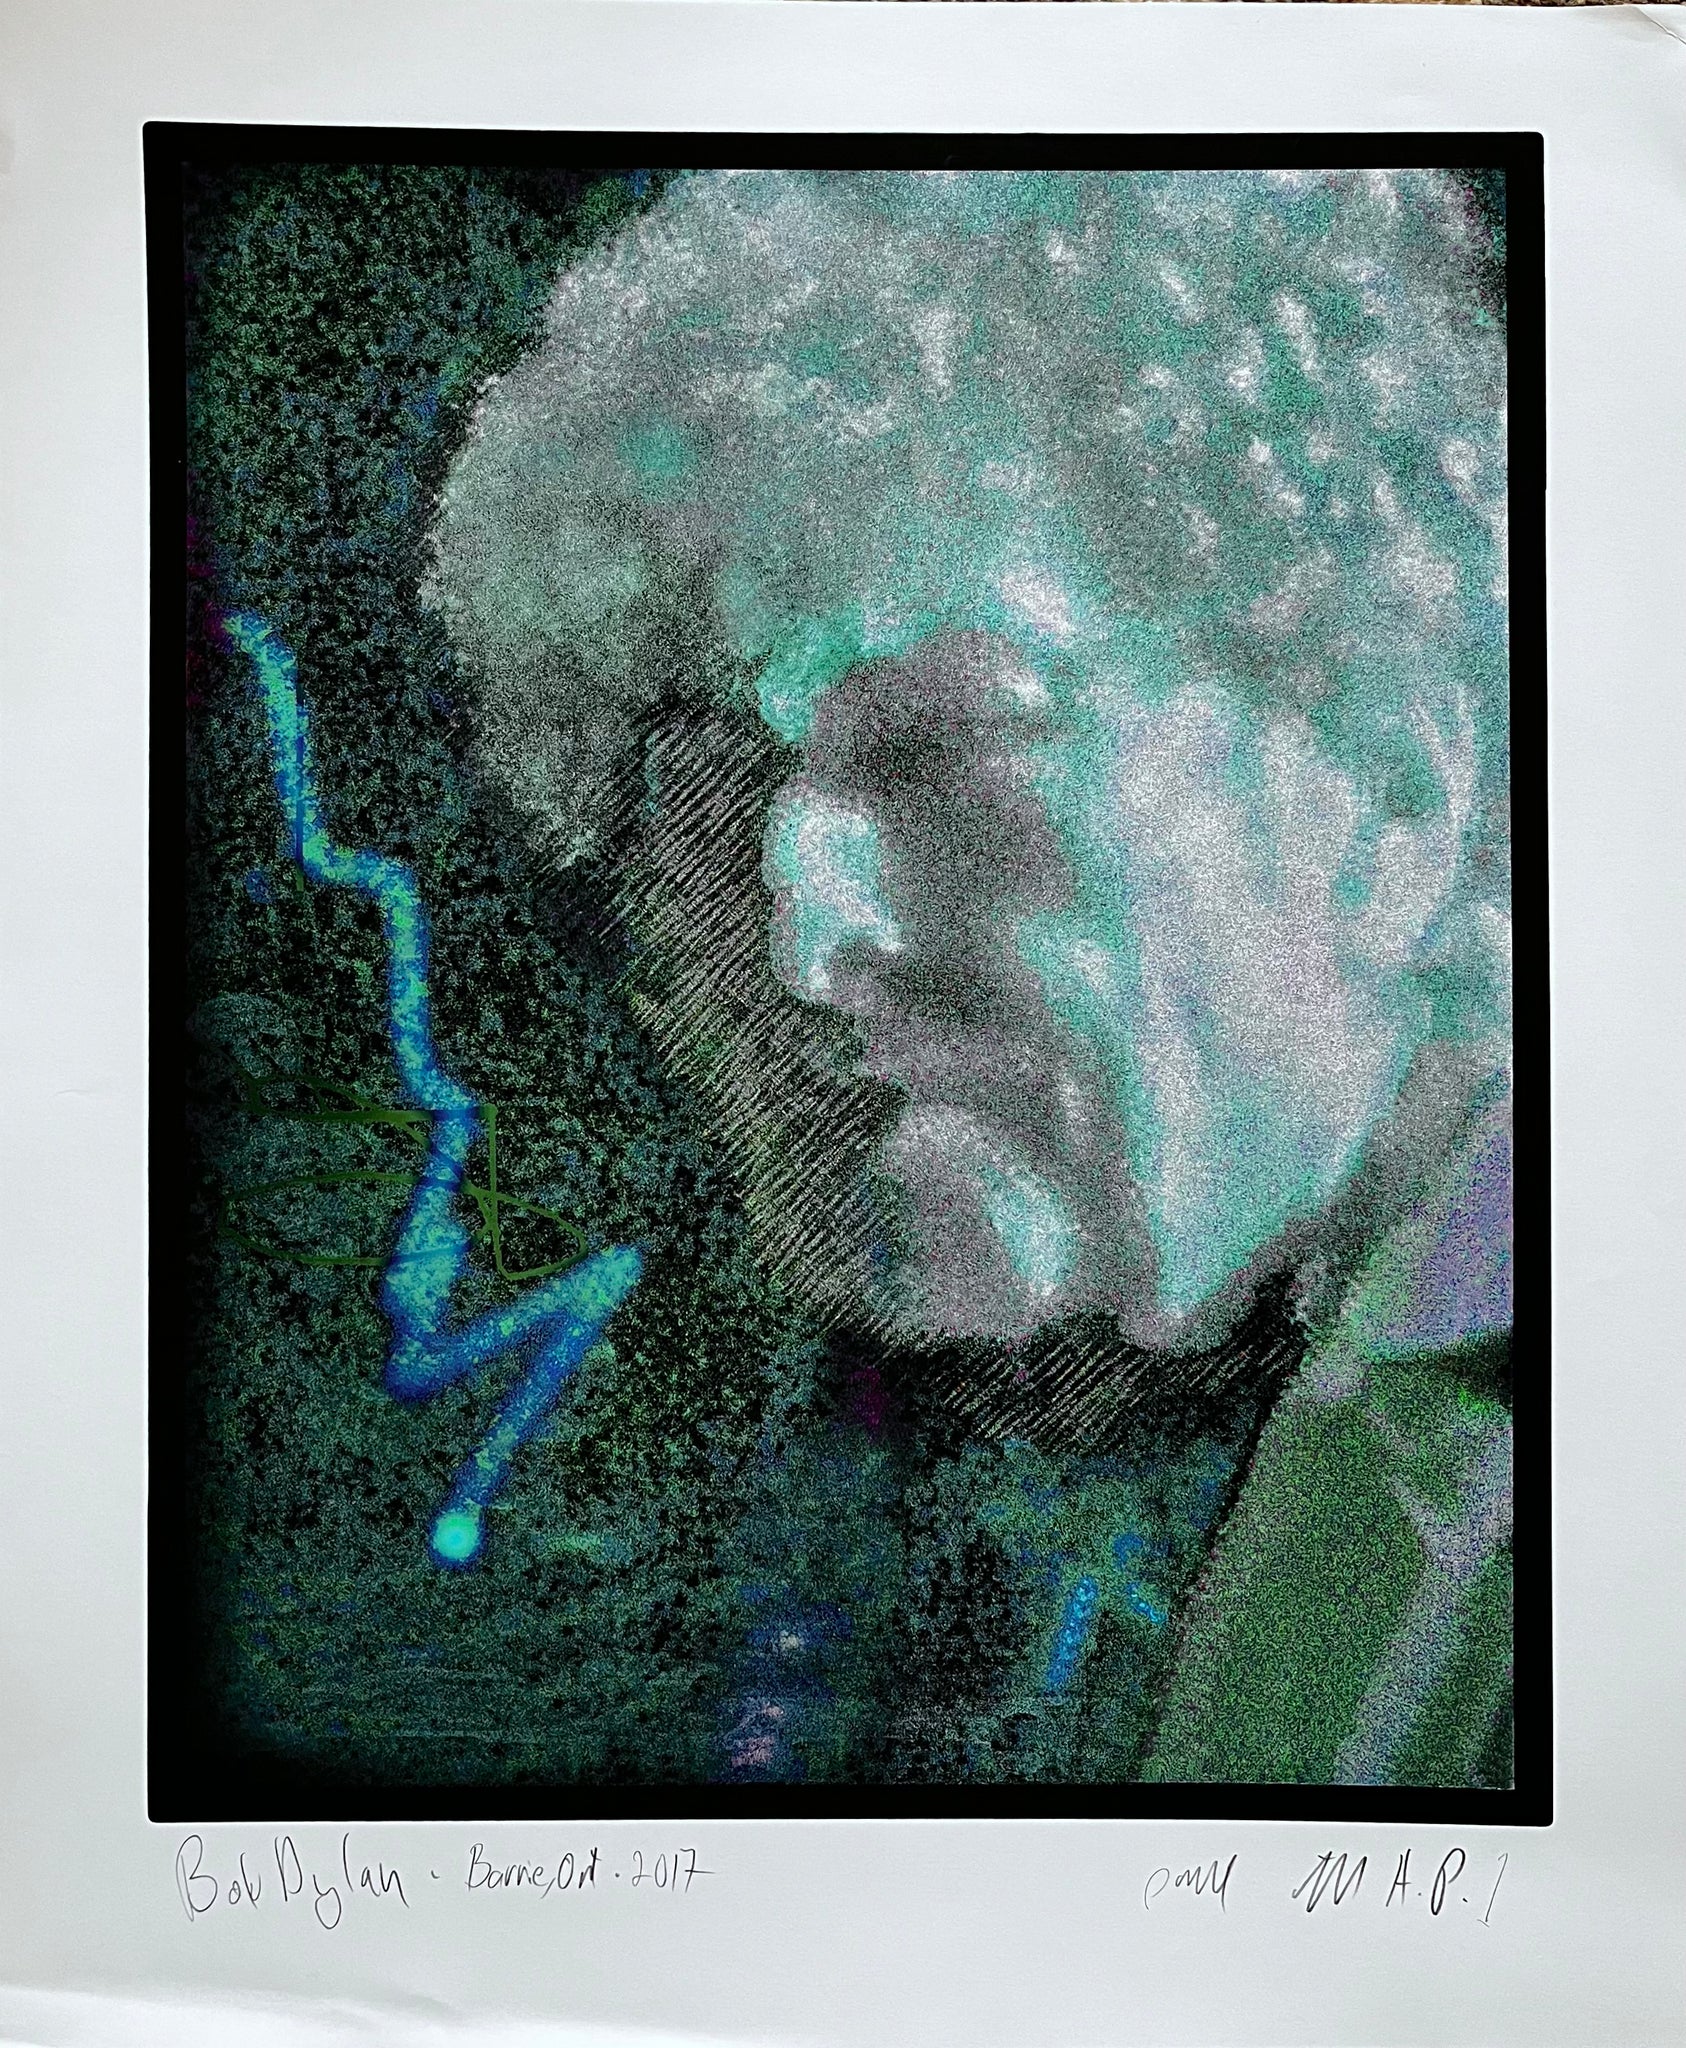 Bob Dylan,Barrie Ontario, 2017 A/P 2